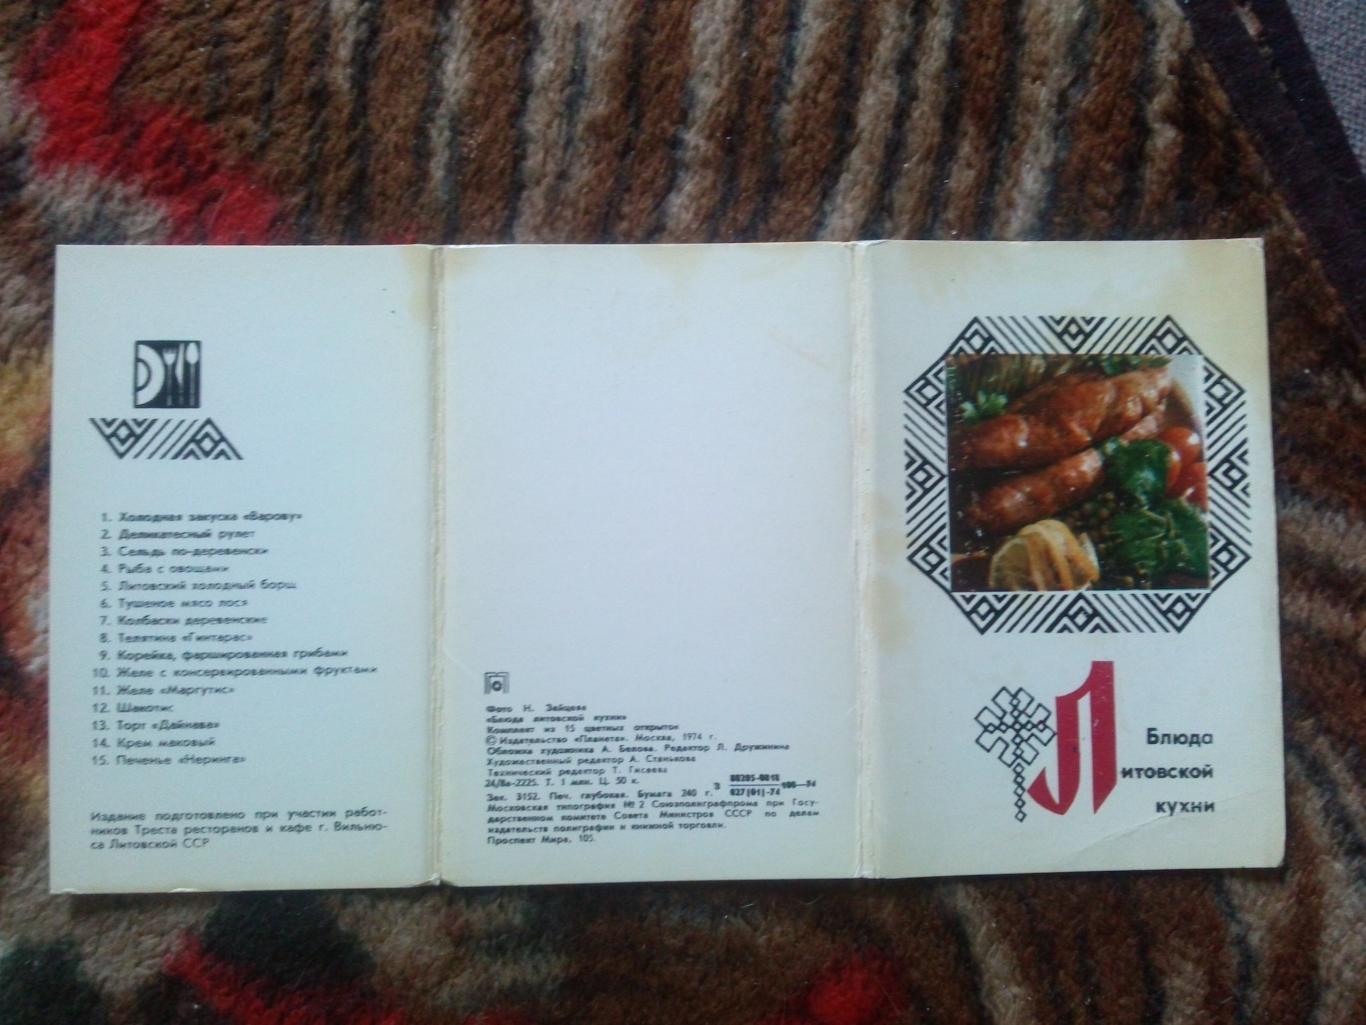 Блюда литовской кухни 1974 г. полный набор - 15 открыток (Кулинария , рецепты) 1